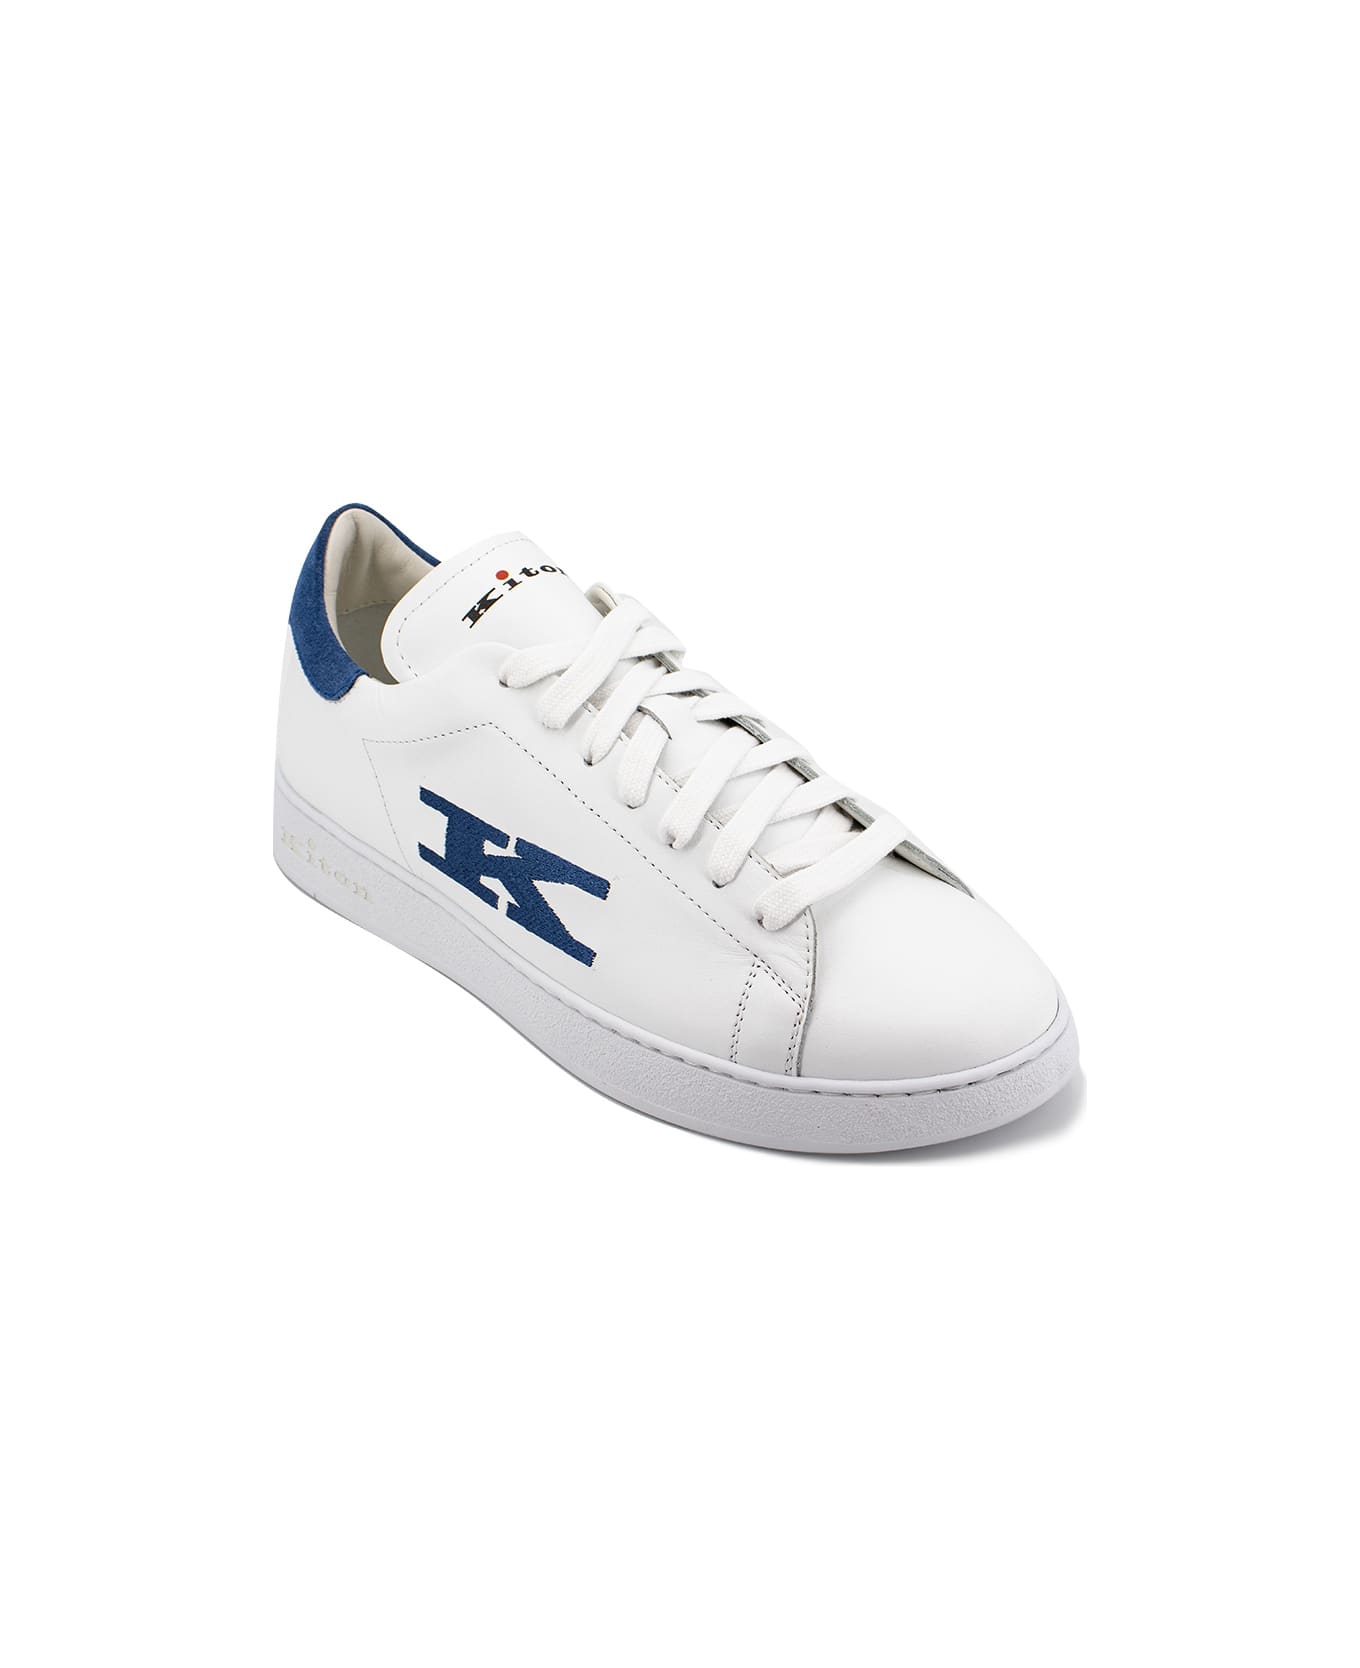 Kiton Sneakers - WHITE  LIGHT BLUE スニーカー